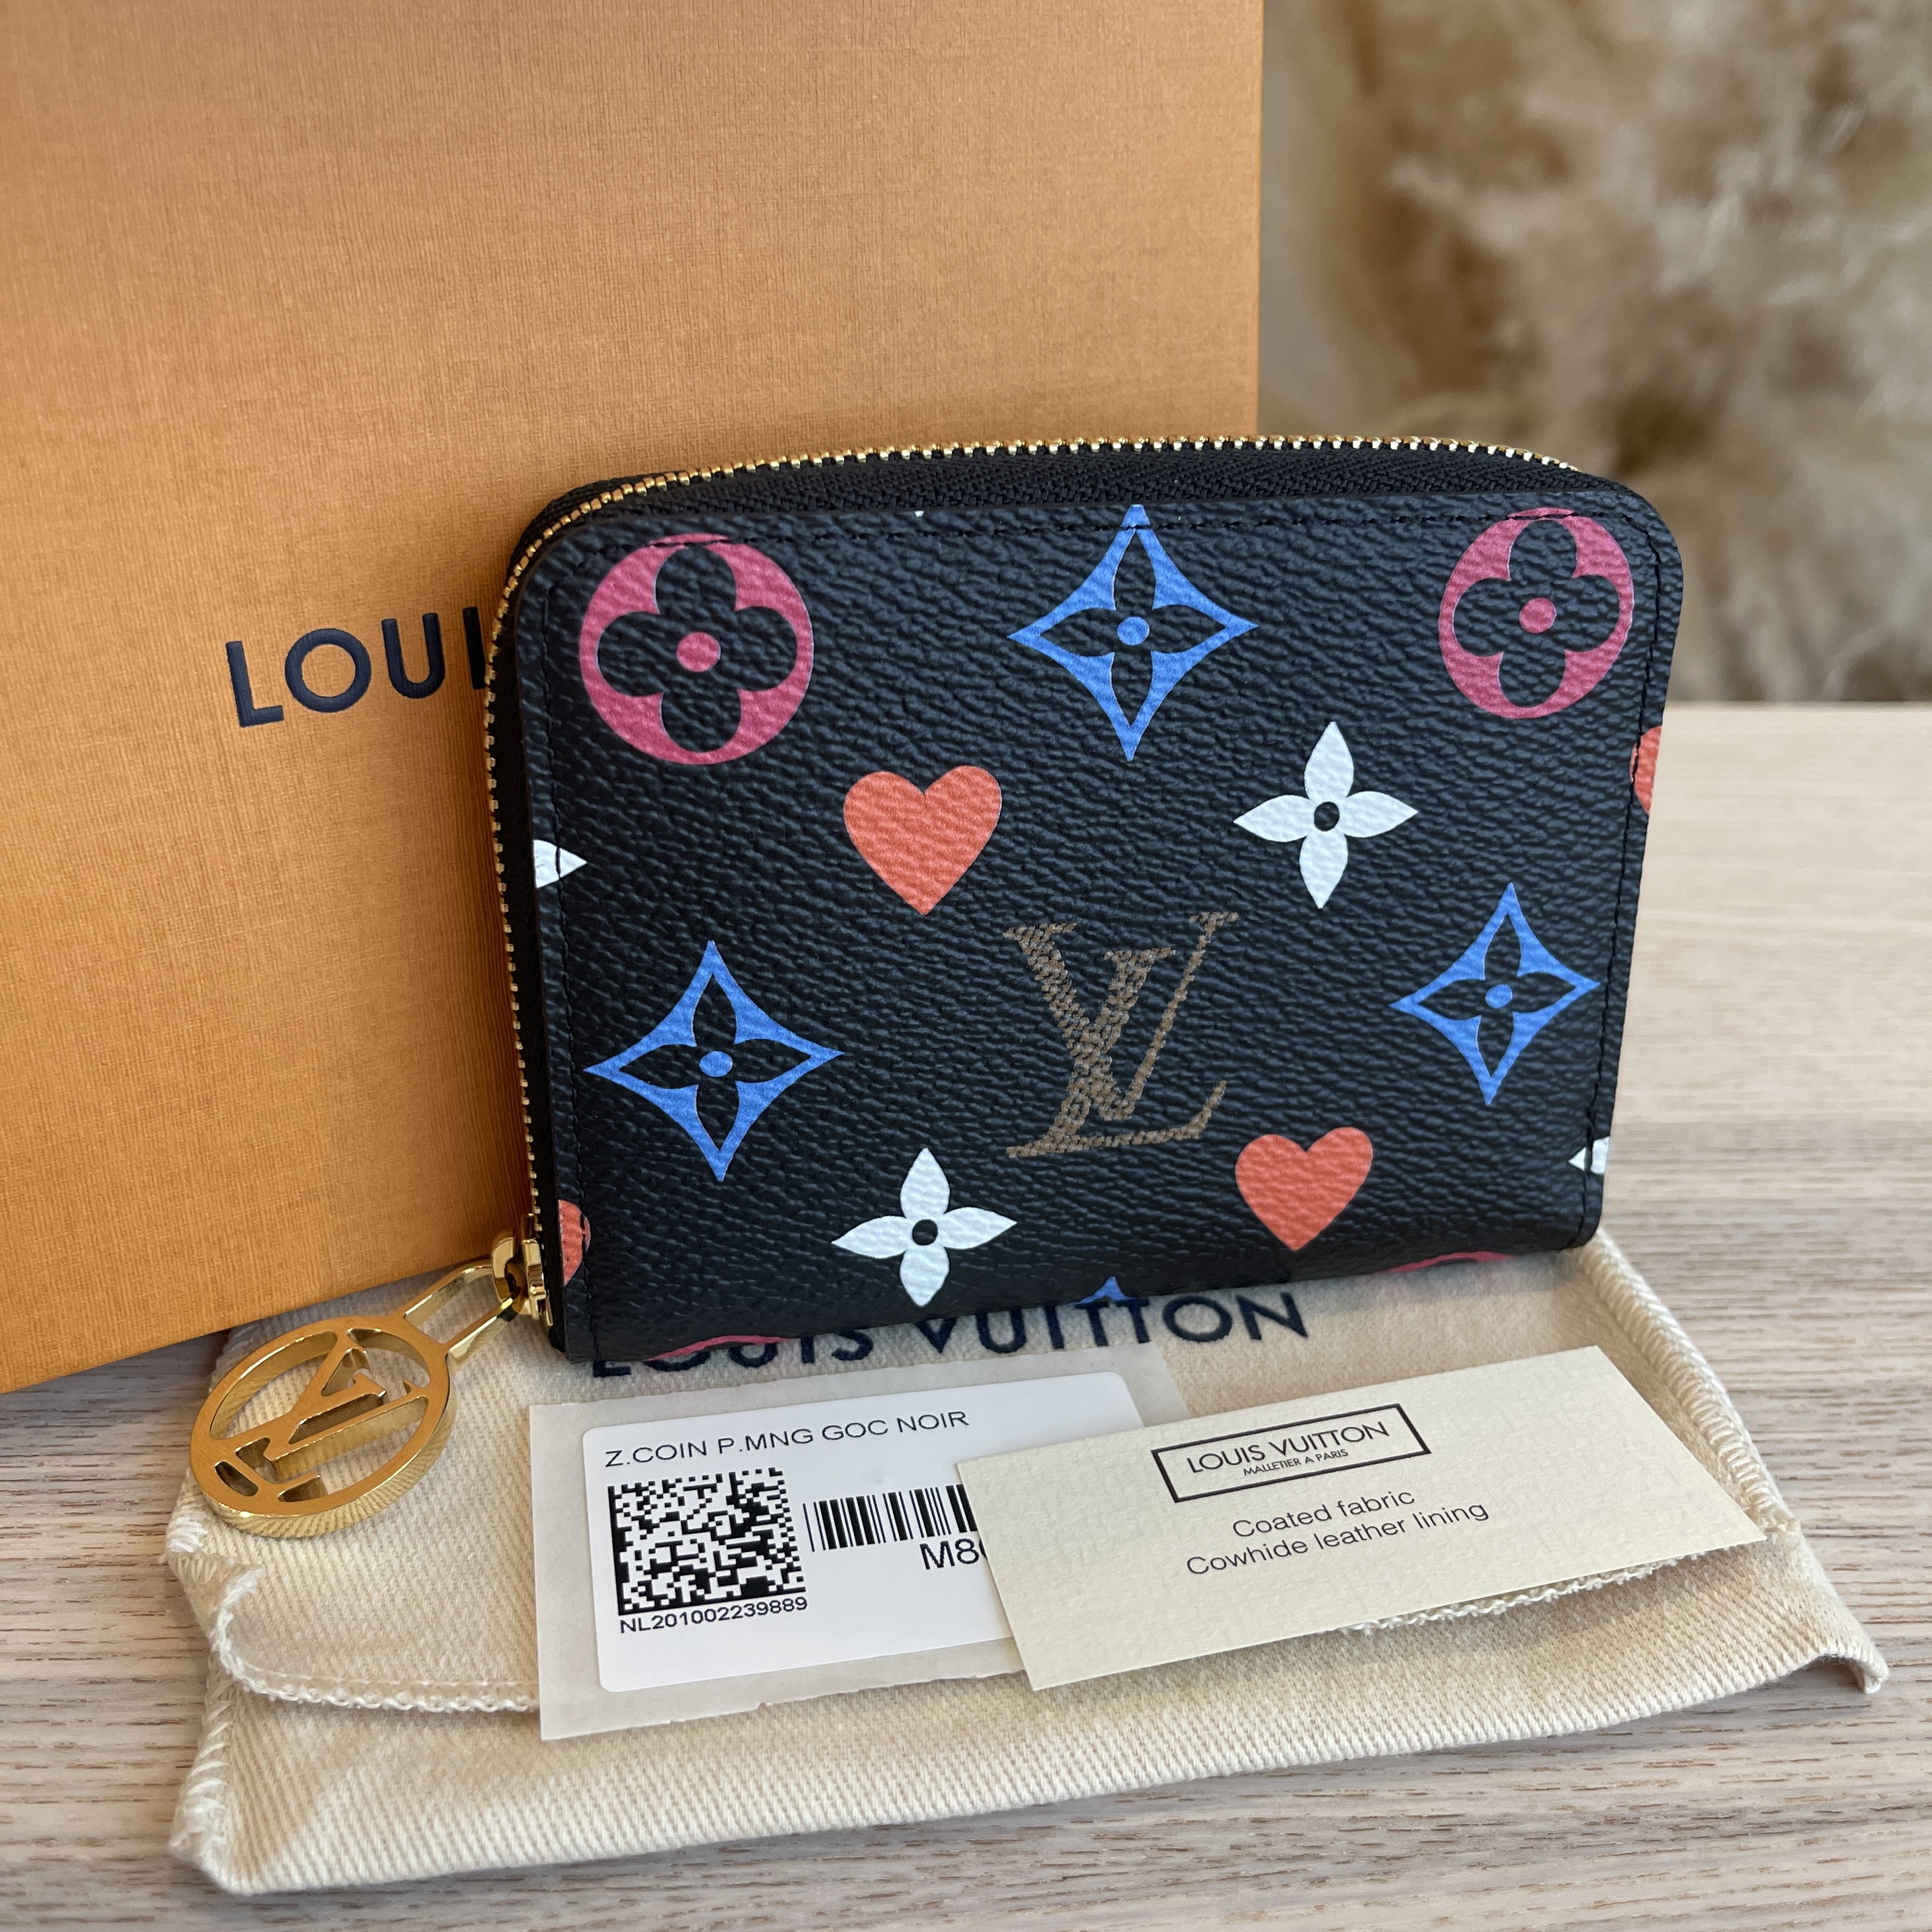 Louis Vuitton® Zippy Coin Purse  Coin purse, Coin purse wallet